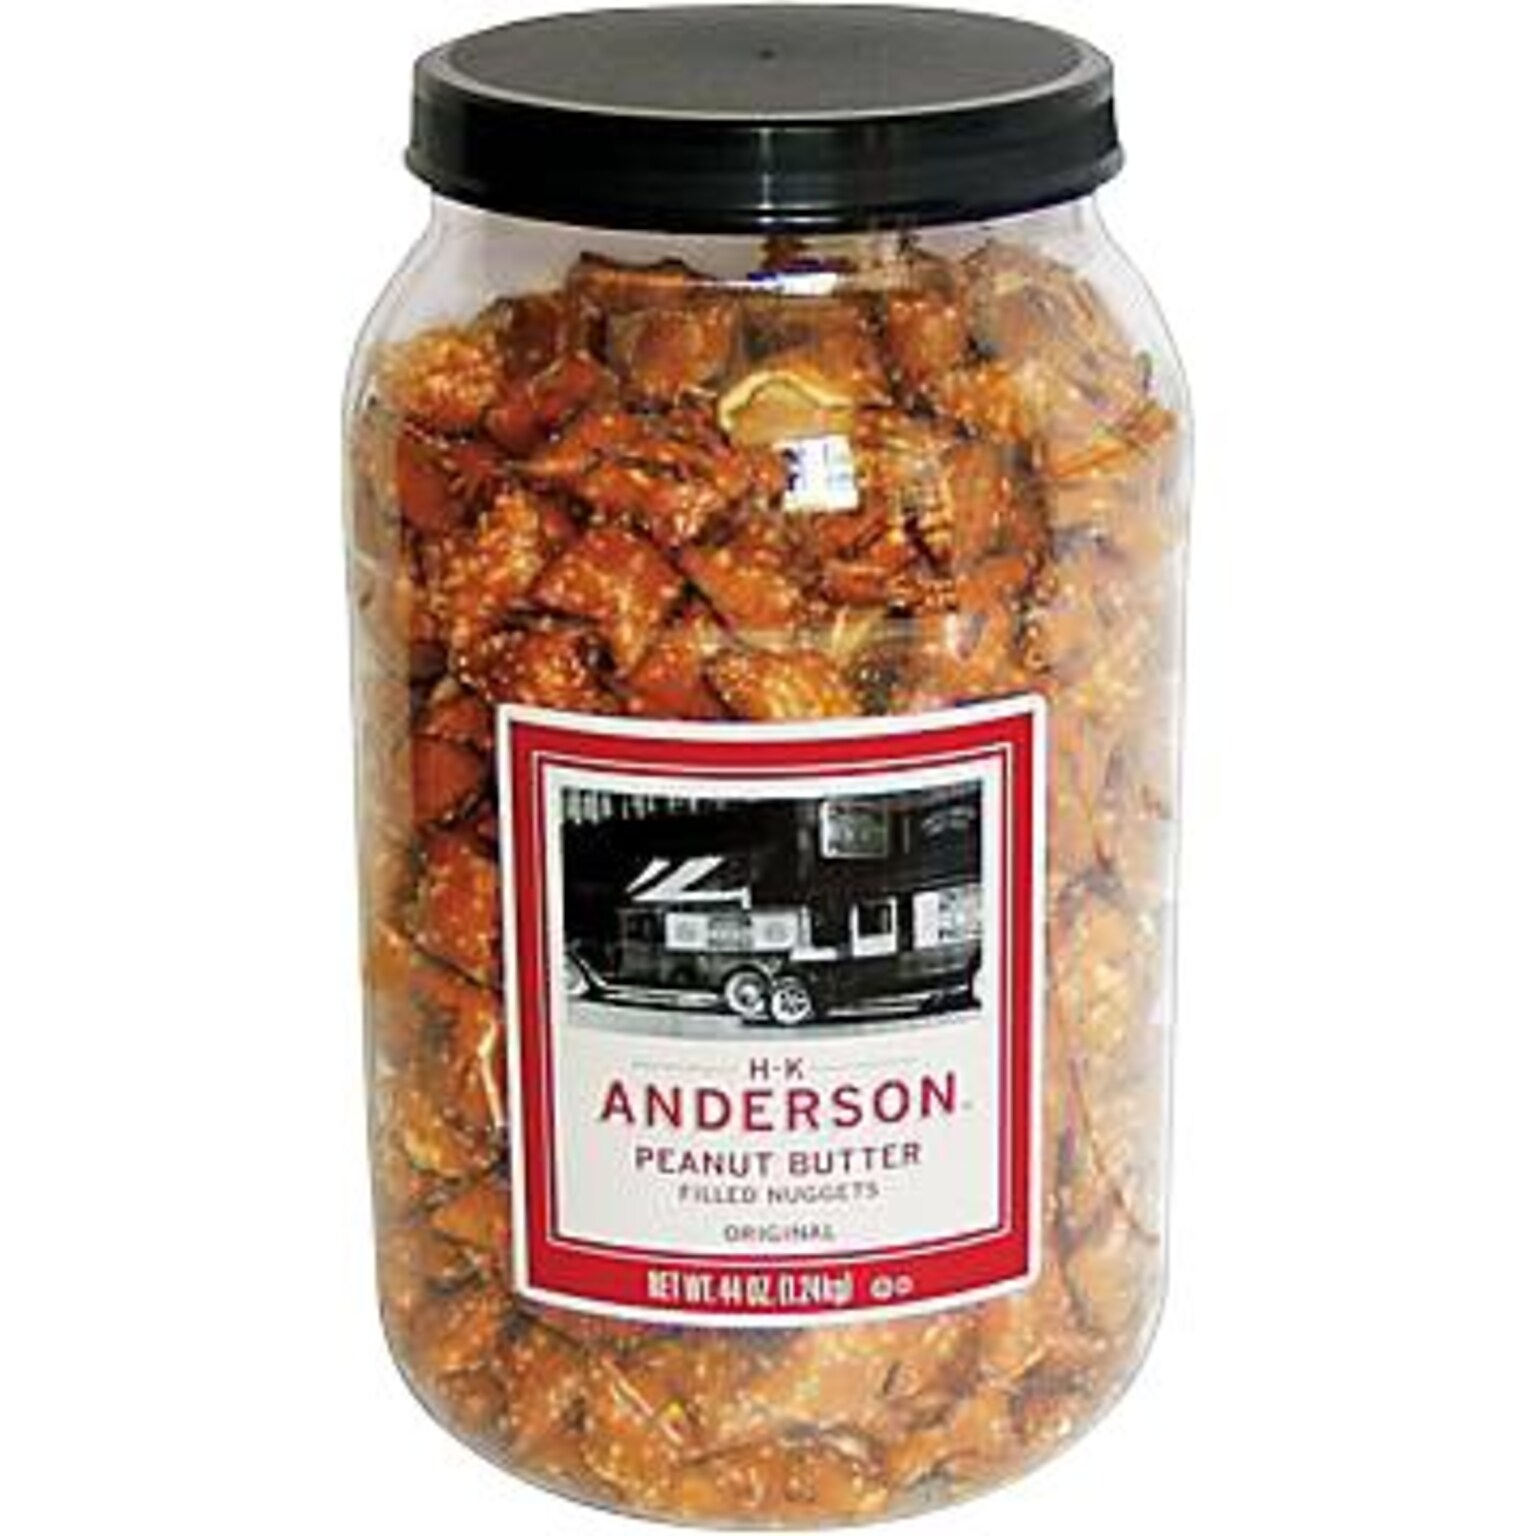 Anderson Peanut Butter Filled Pretzels, 2.75 lbs. (GOV7543670105)